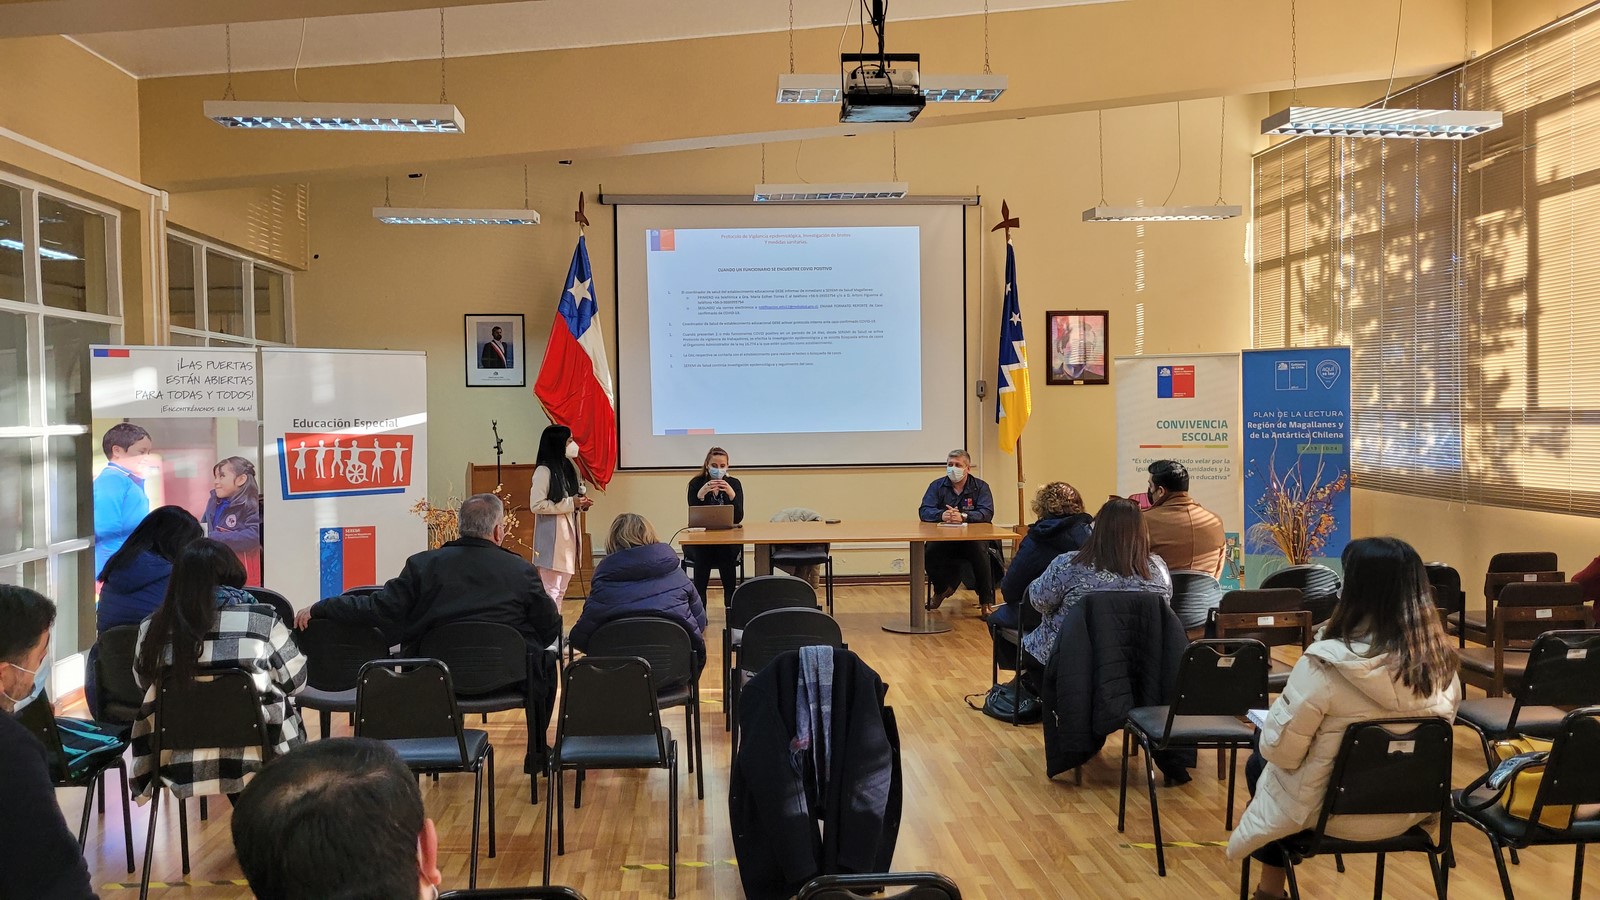 Salud y Educación refuerzan medidas Covid19 y aplicación de protocolos en los establecimientos educacionales de Magallanes durante el segundo semestre